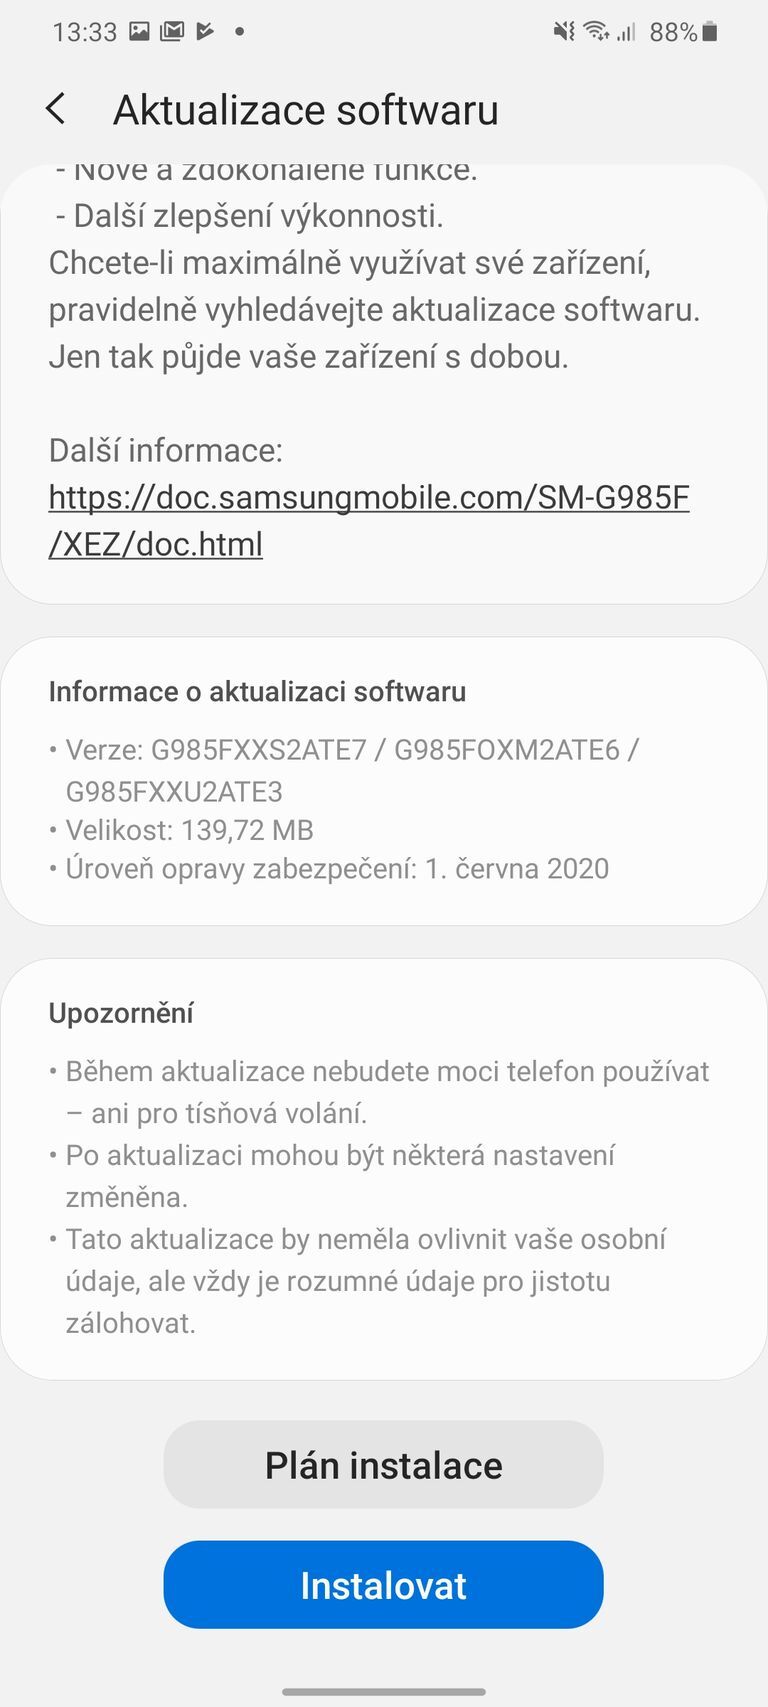 Samsung Galaxy S20+